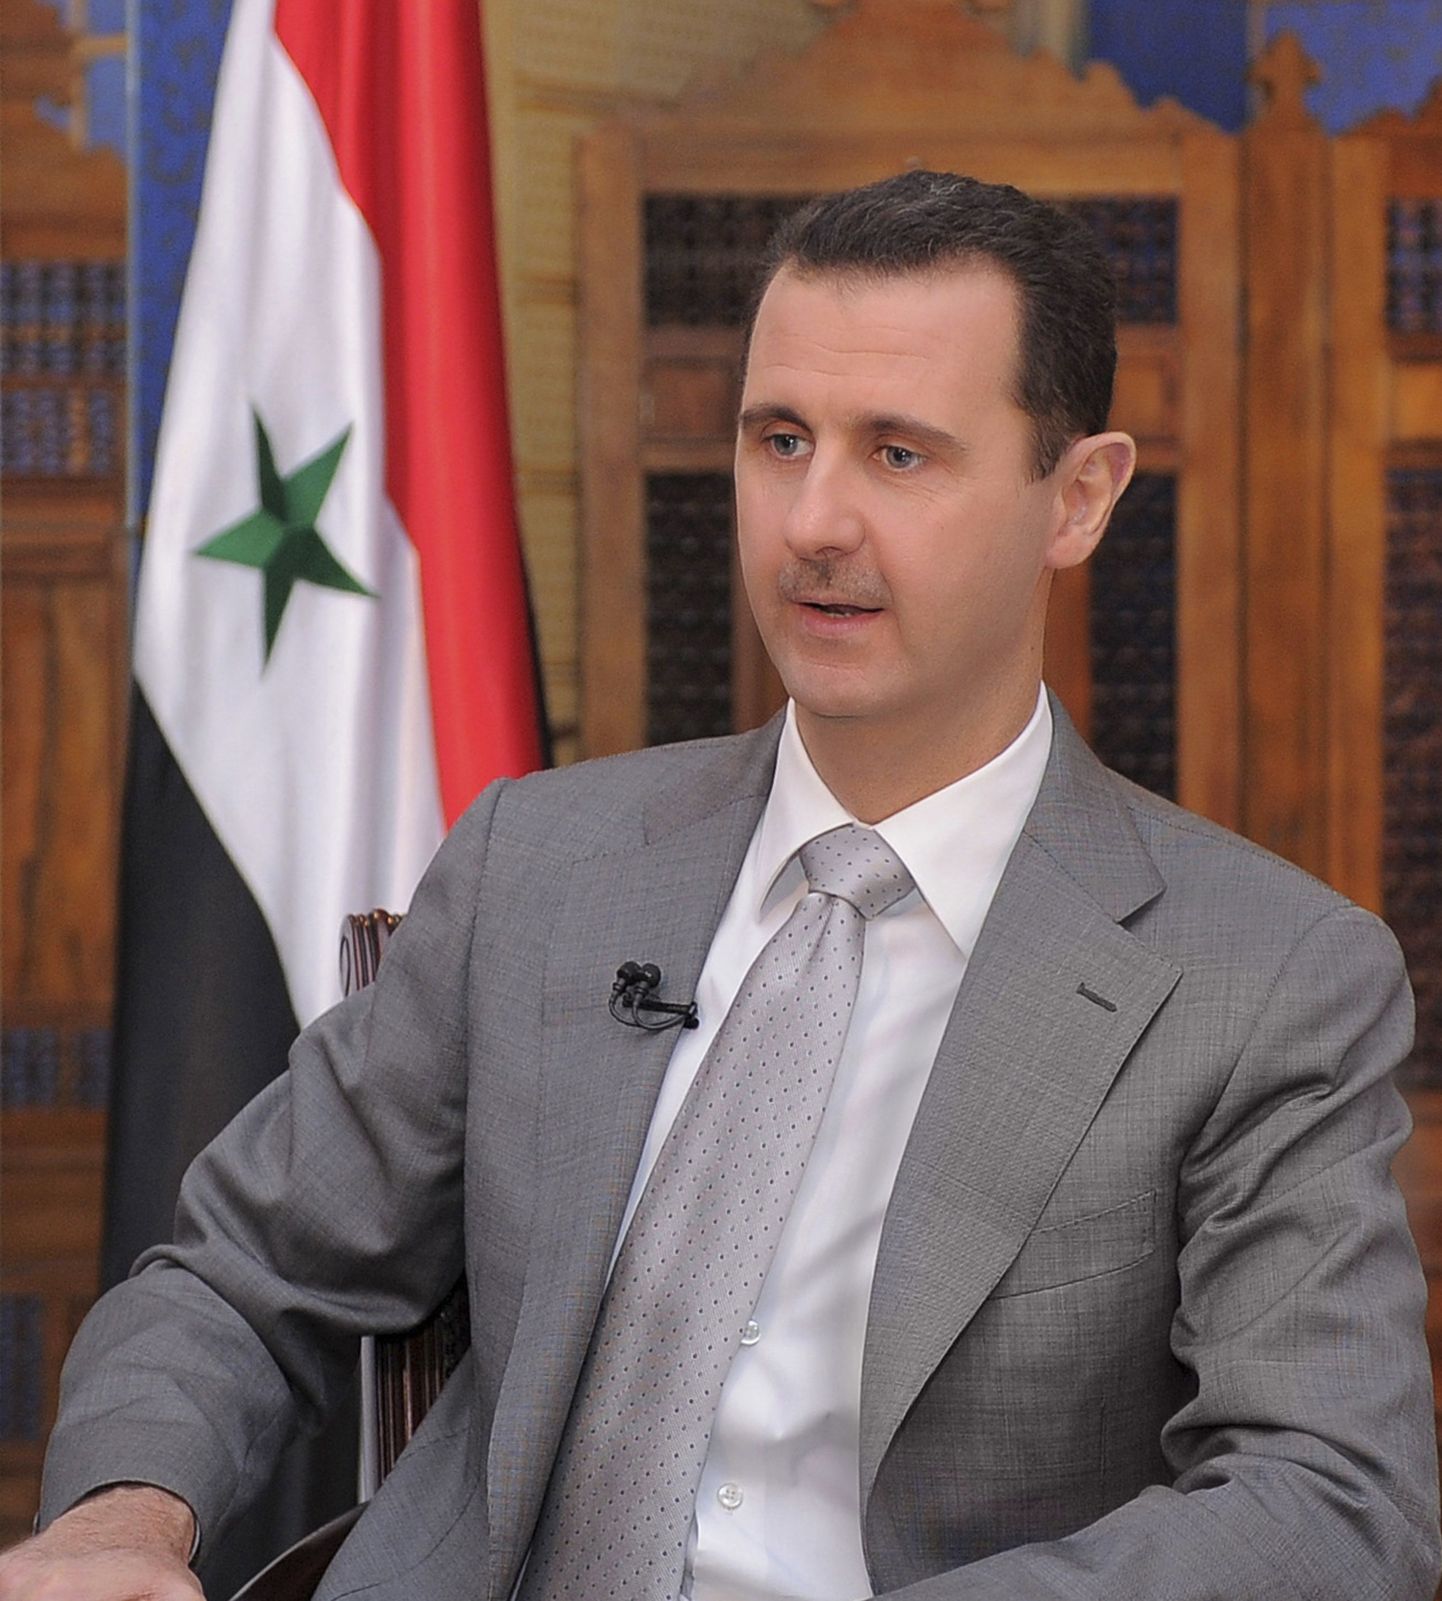 Süüria president Bashar al-Assad